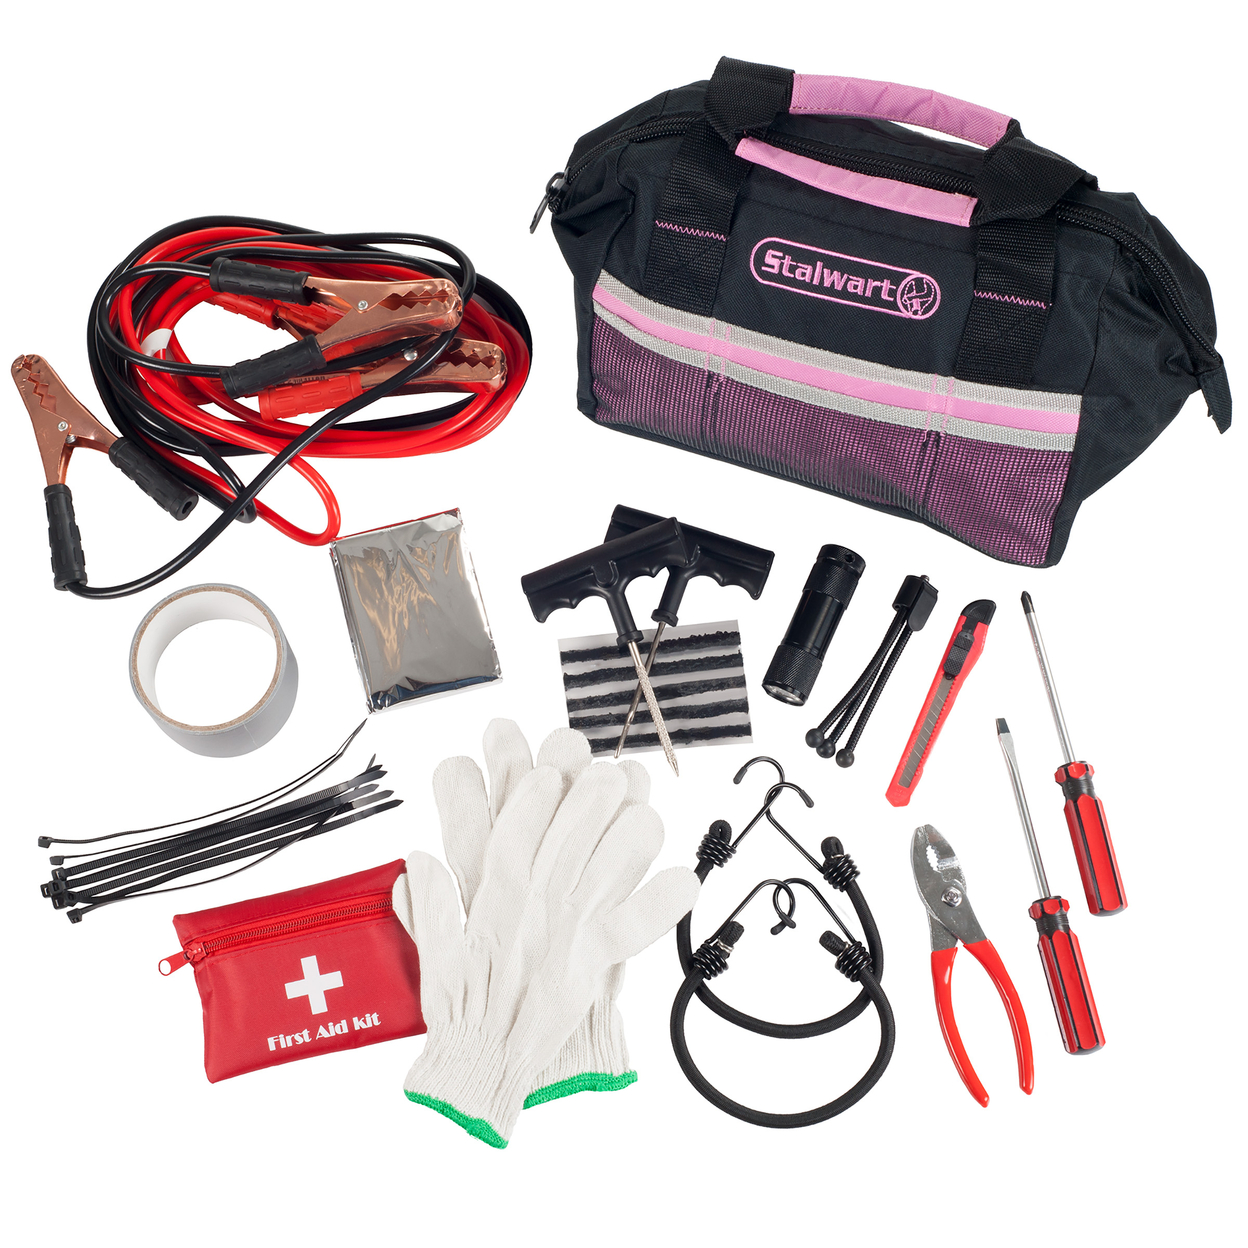 Pink Emergency Roadside Kit Jumper Cables Blanket Tools Trunk Car Safety